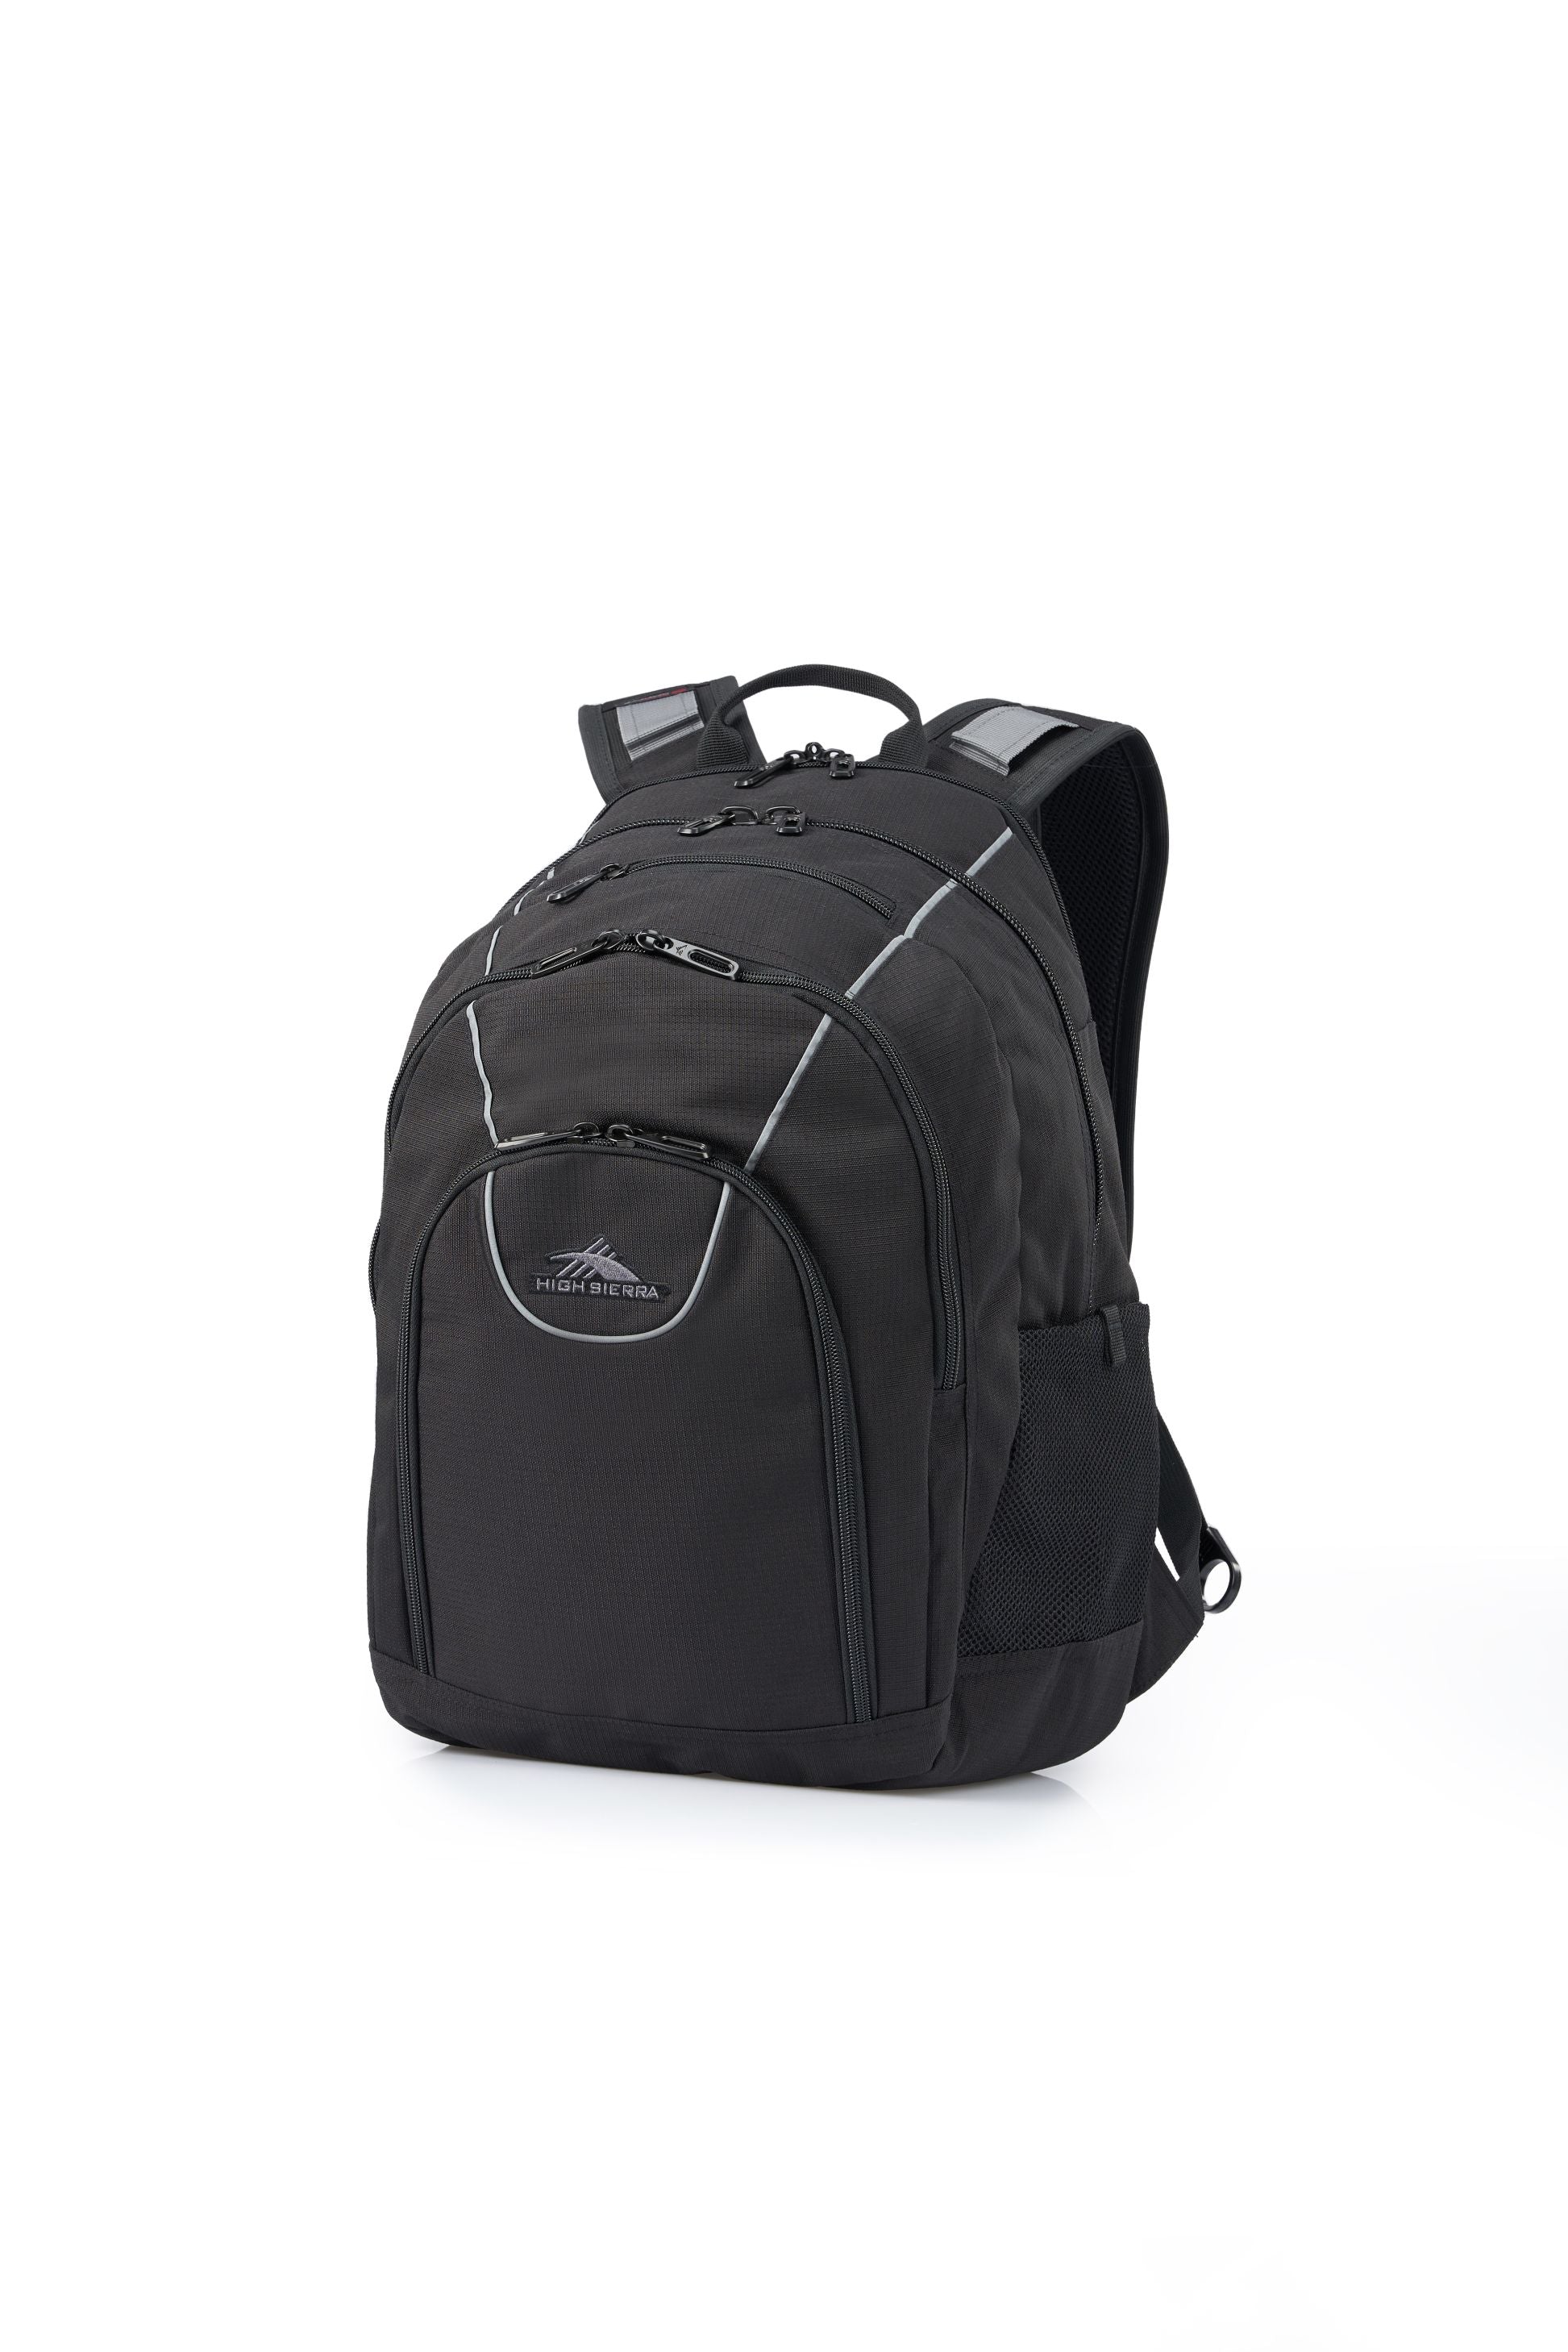 High Sierra - Academy 3.0 Backpack Eco - Black - 0